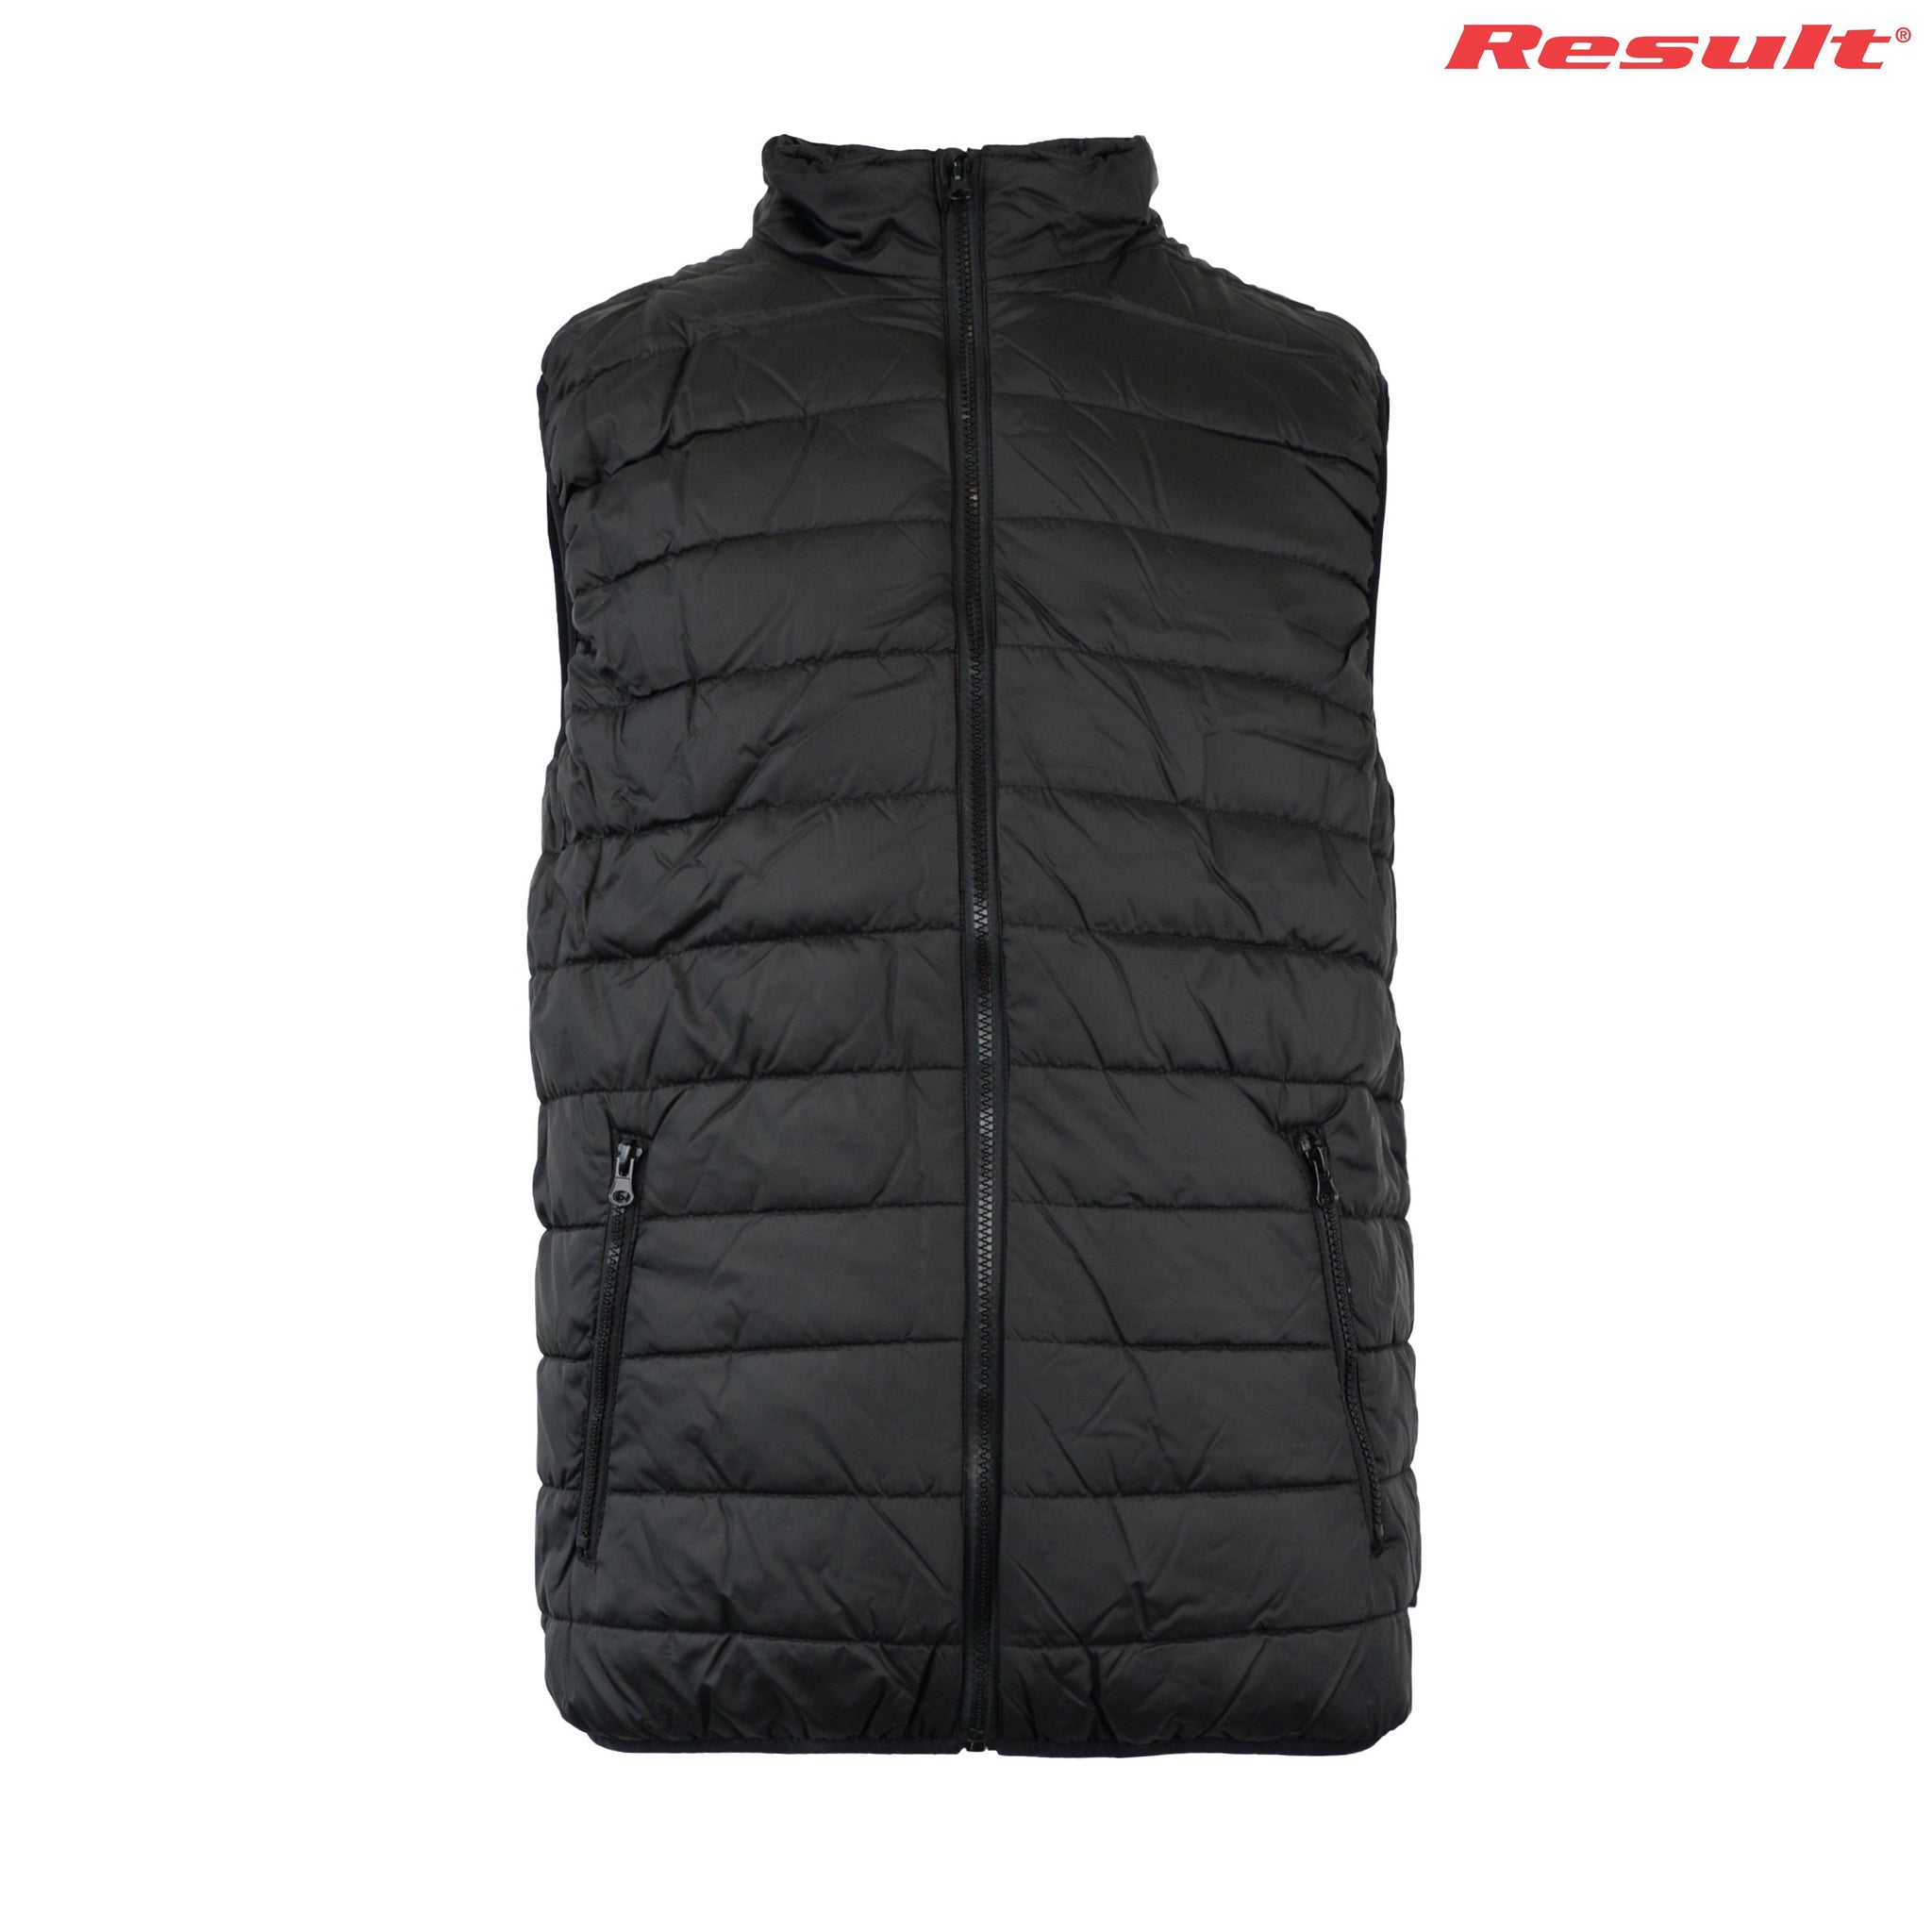 Jackets - R234M Result Adult Soft Padded Vest